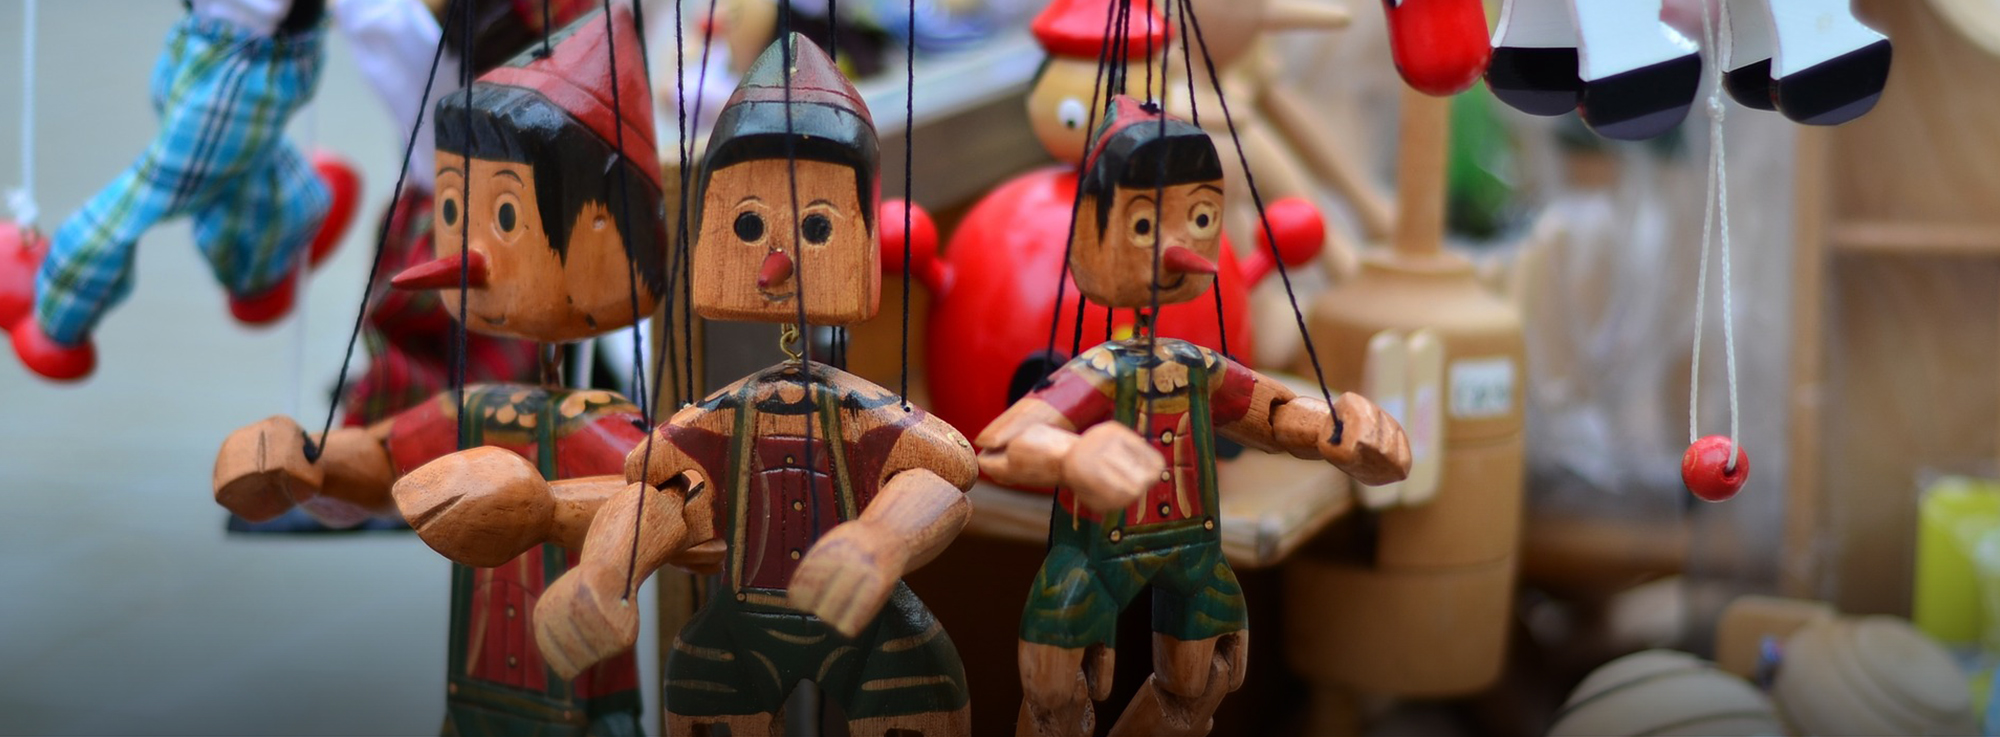 Mola di Bari: Pinocchio Il Musical